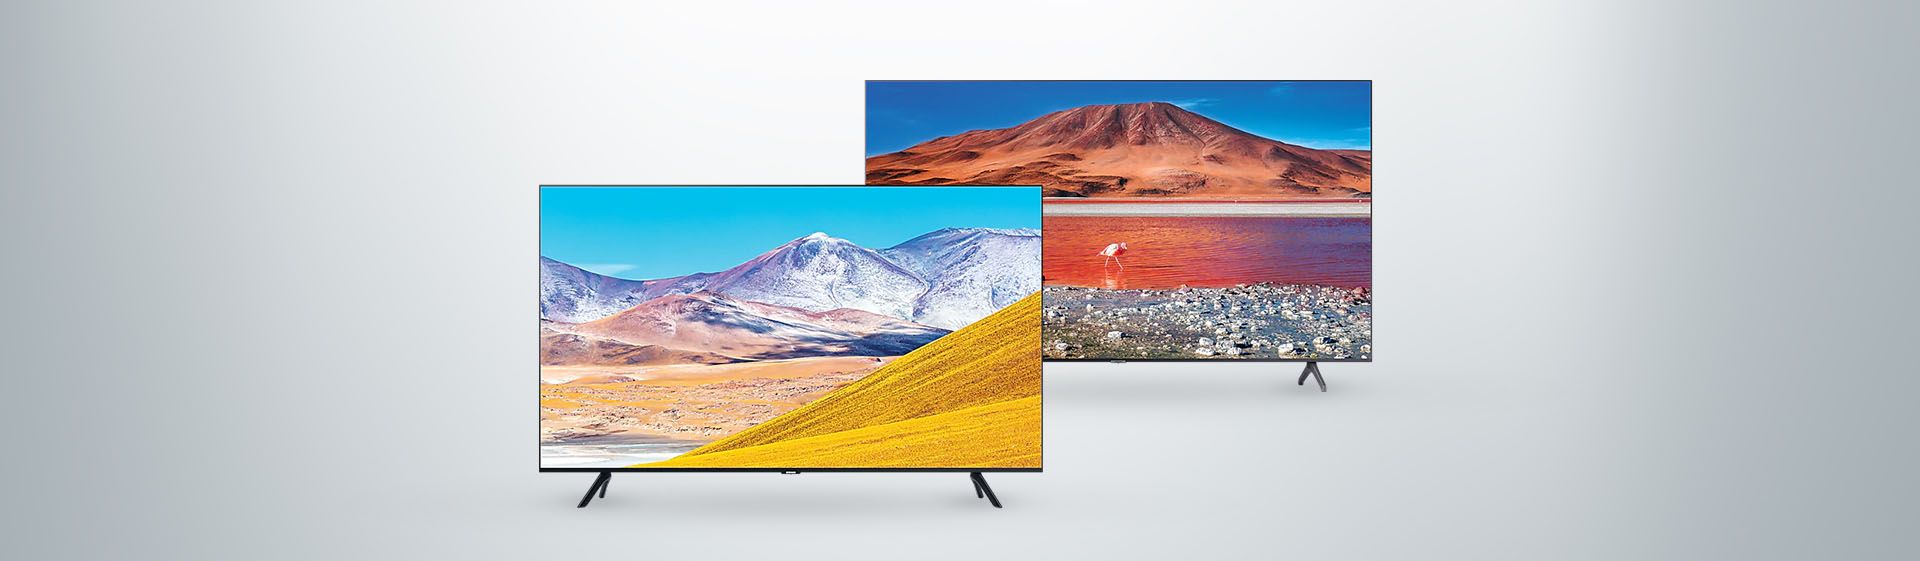 TV Samsung TU8000 vs TU7000: quais as diferenças entre esses dois modelos 2020?